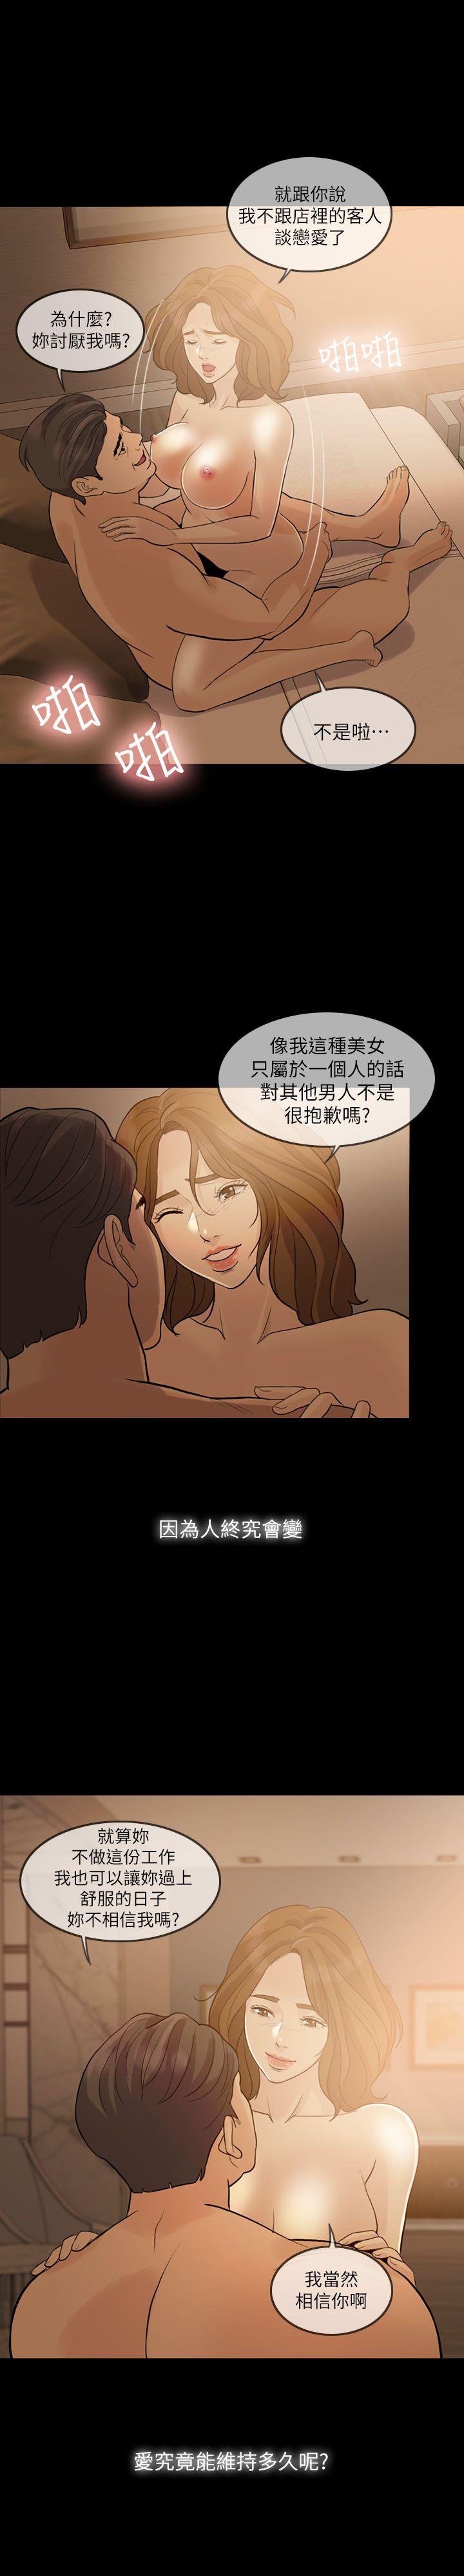 韩国污漫画 失控的愛 第9话 7